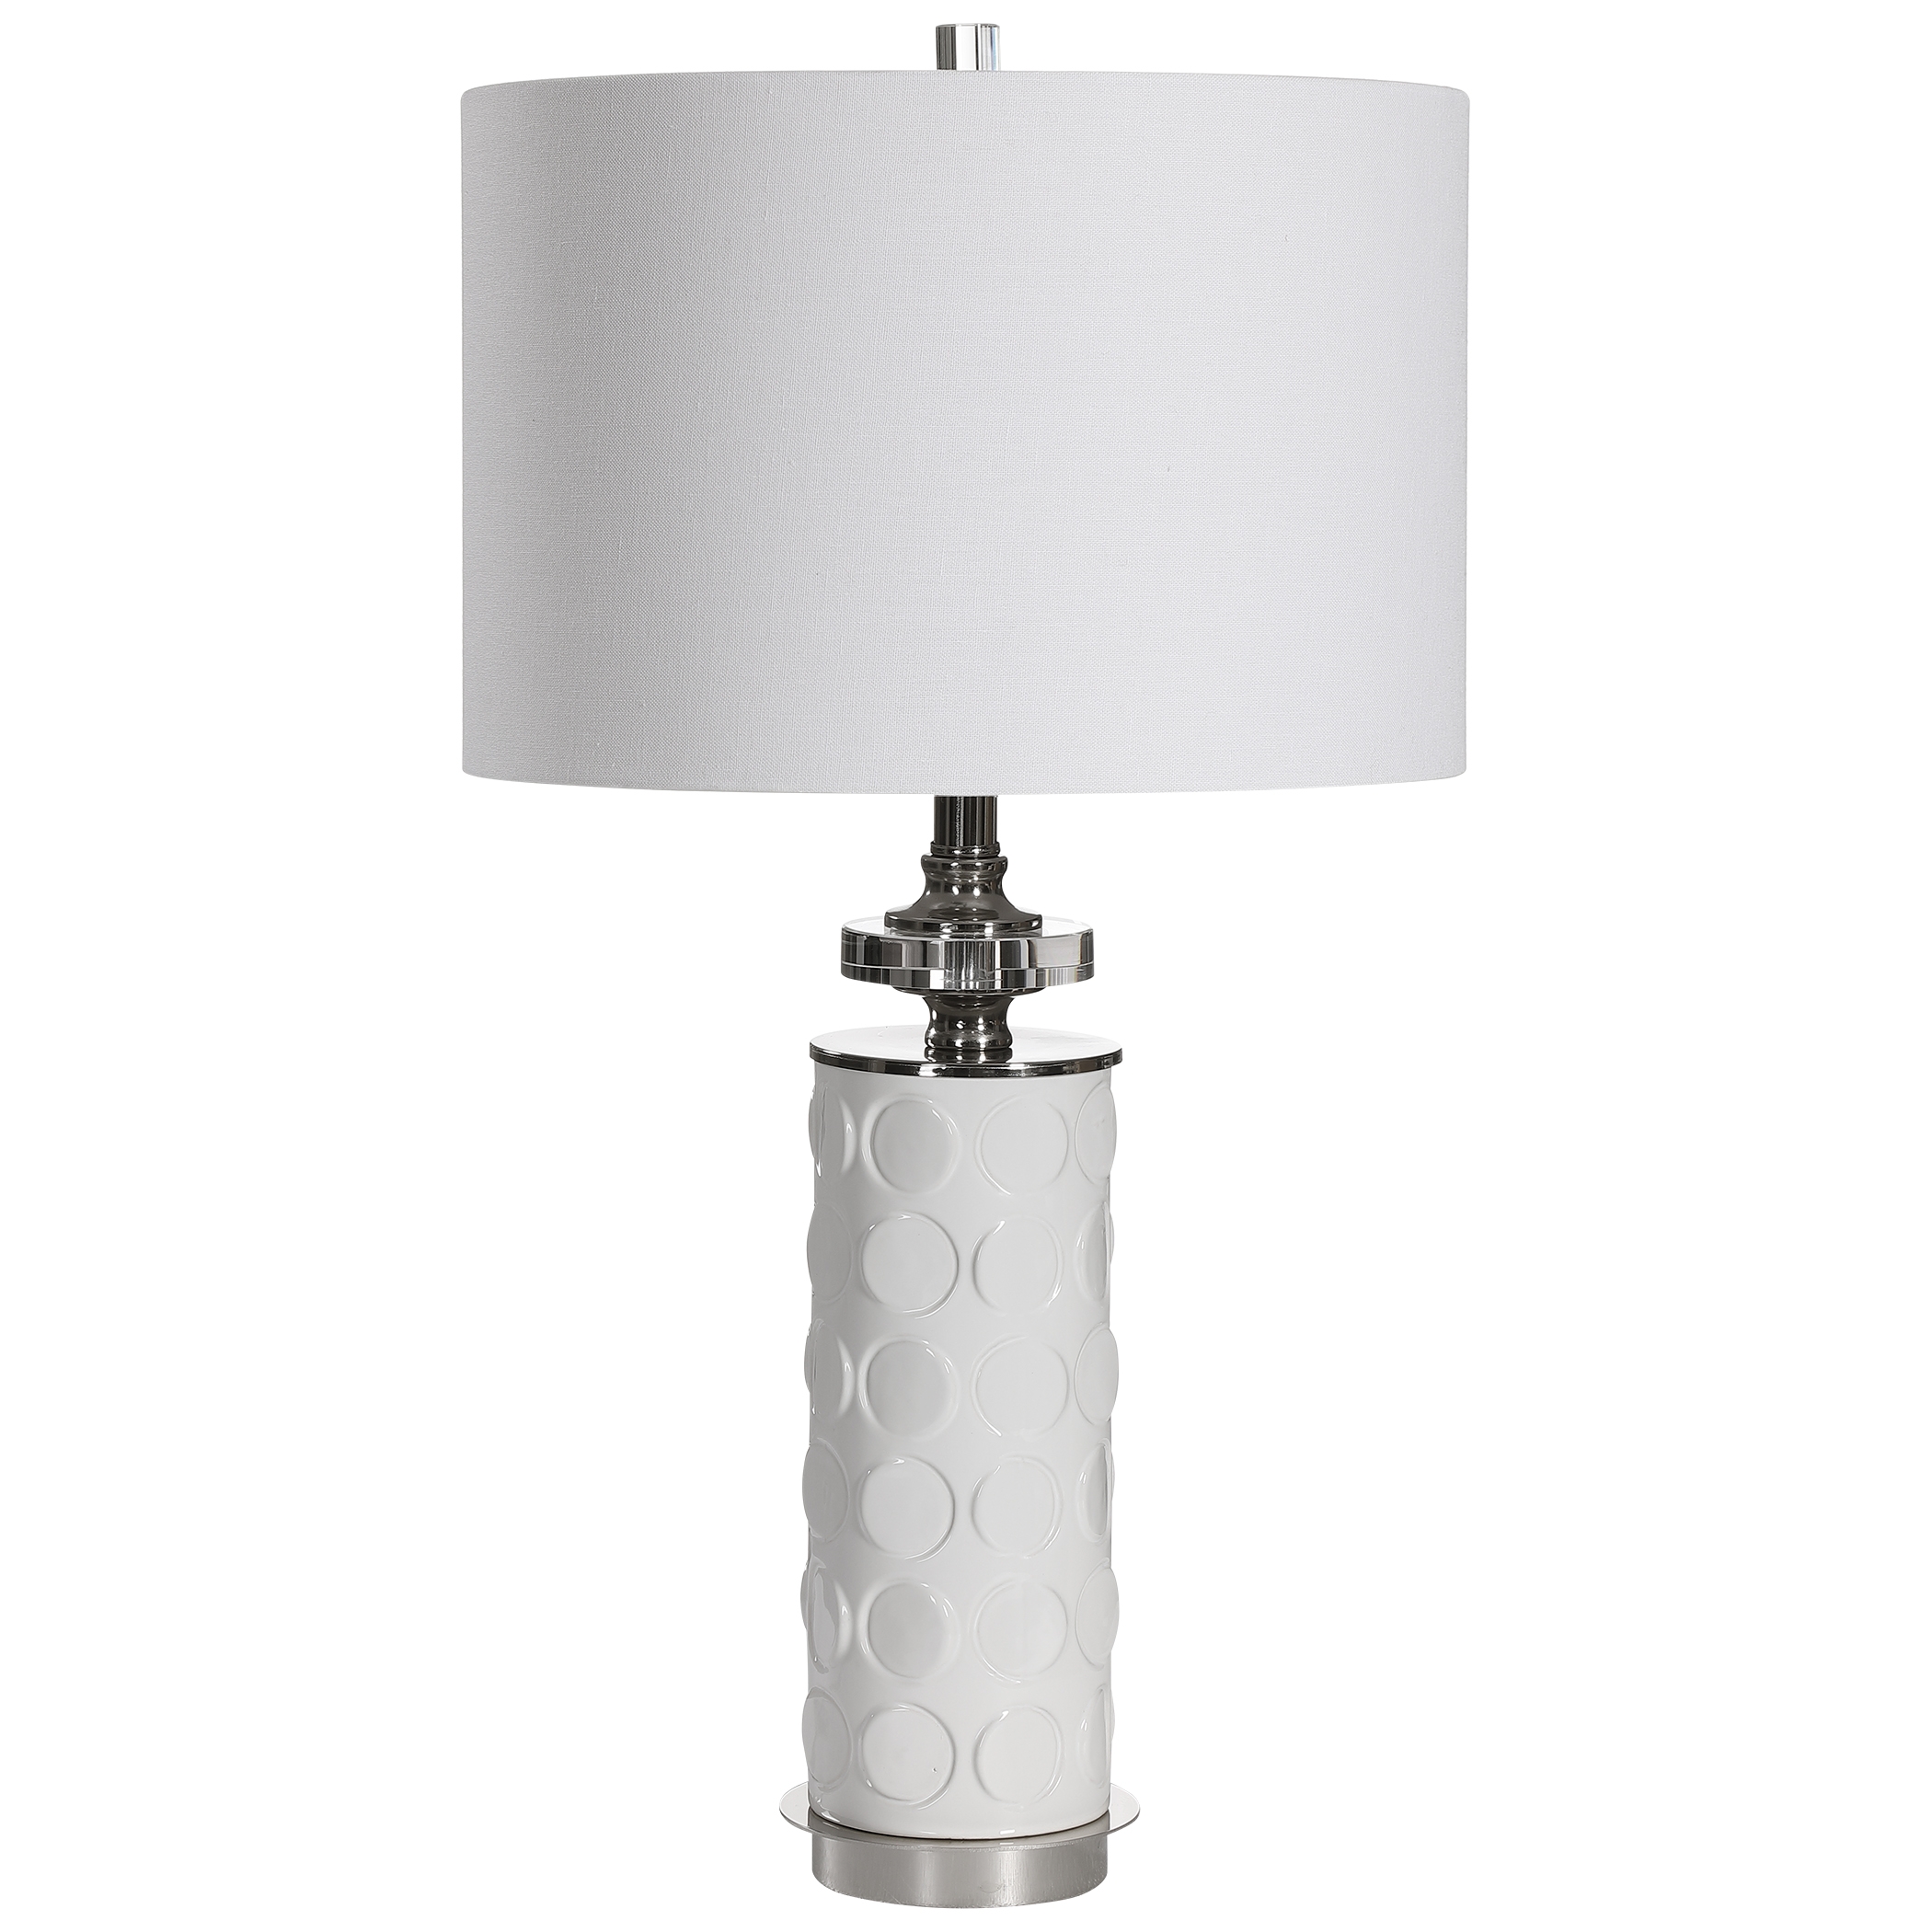 Calia White Table Lamp - Image 2